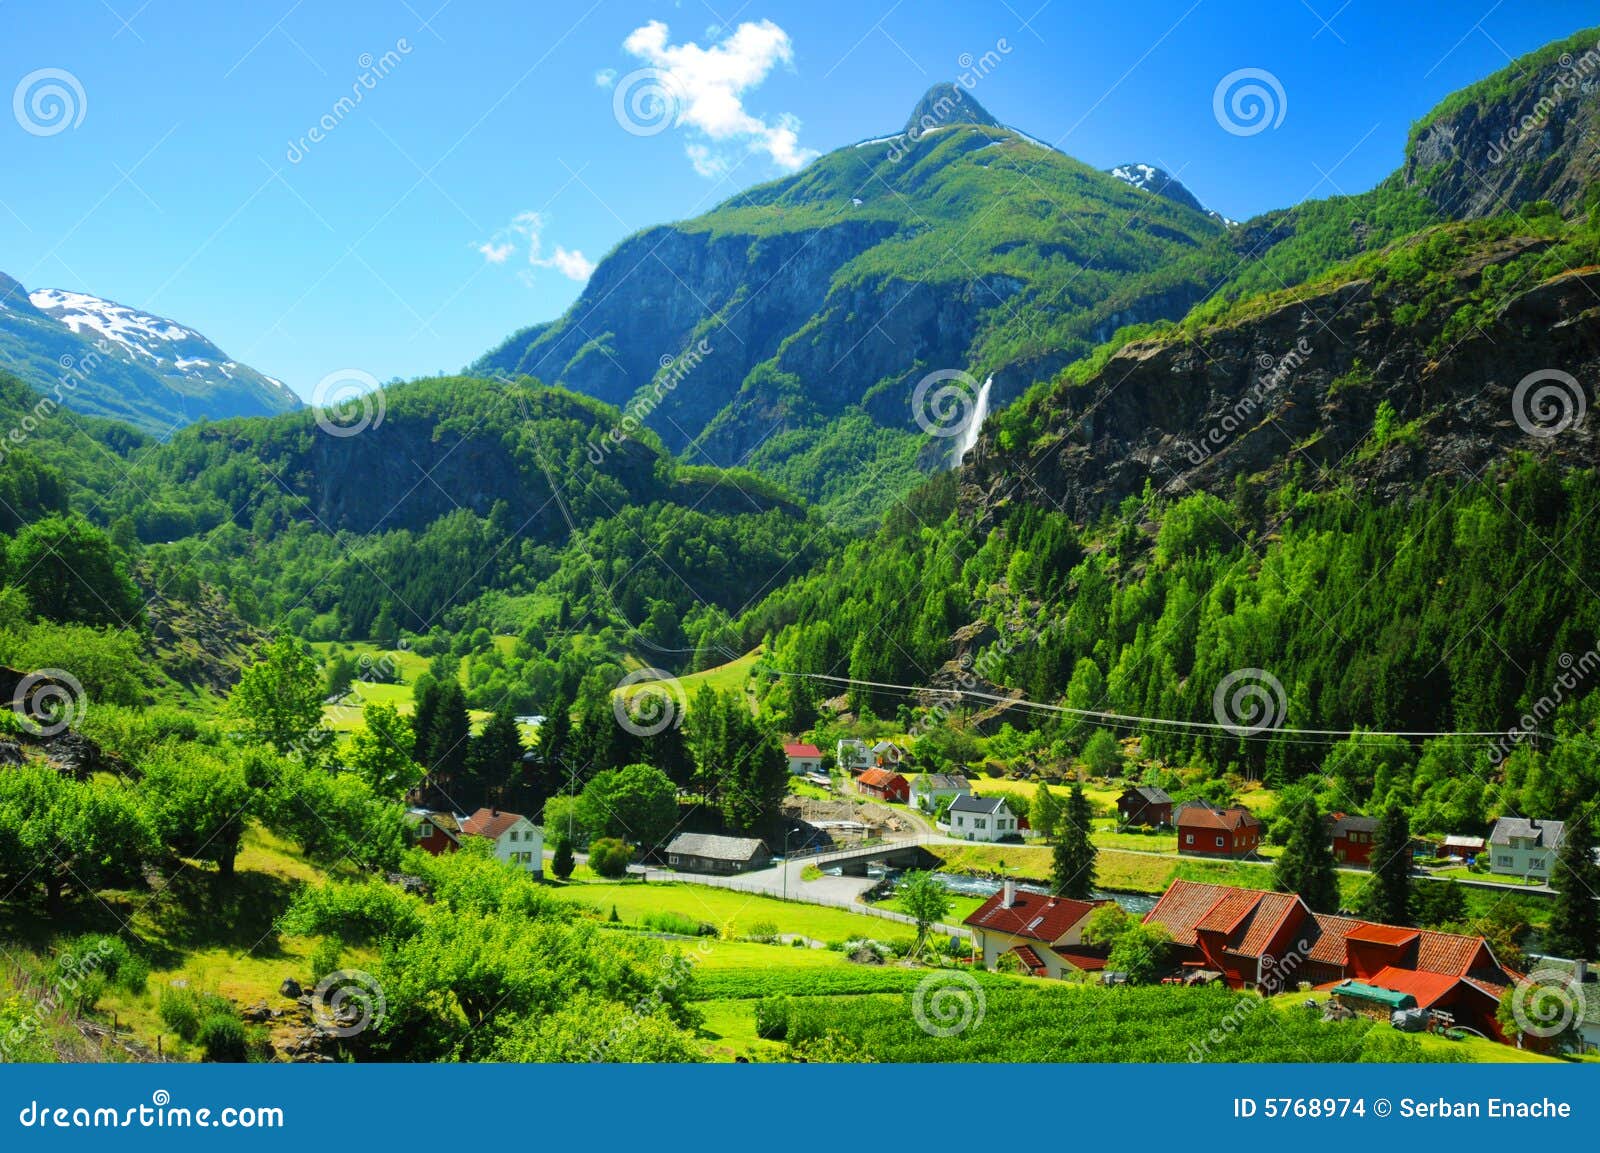 Norway village